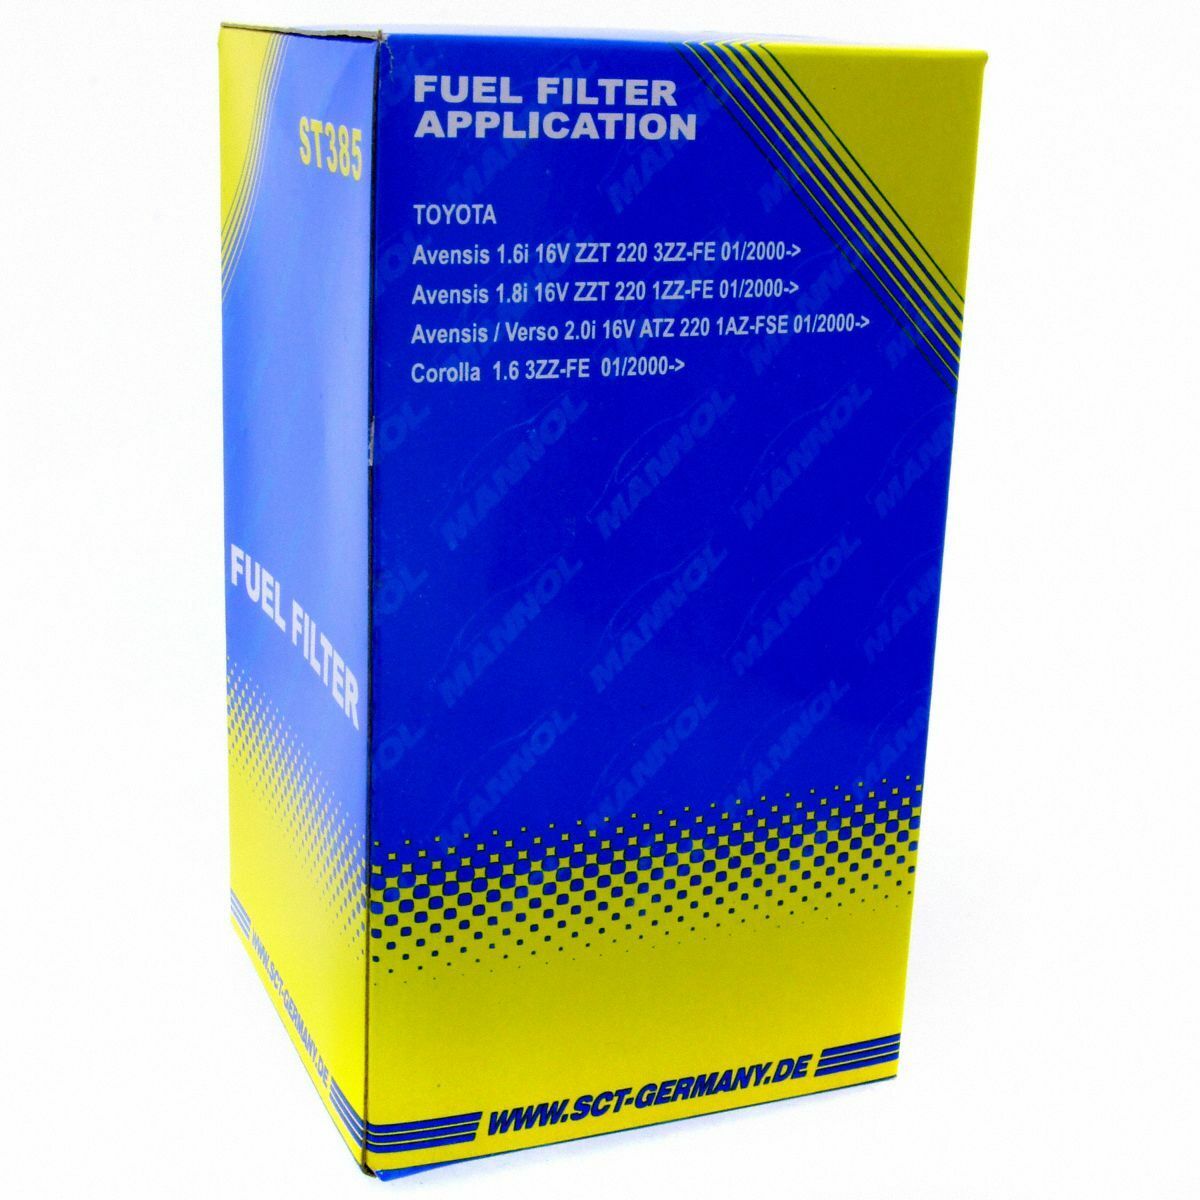 SCT Kraftstofffilter Fahrzeugfilter ST 385 Motorfilter Benzinfilter Toyota